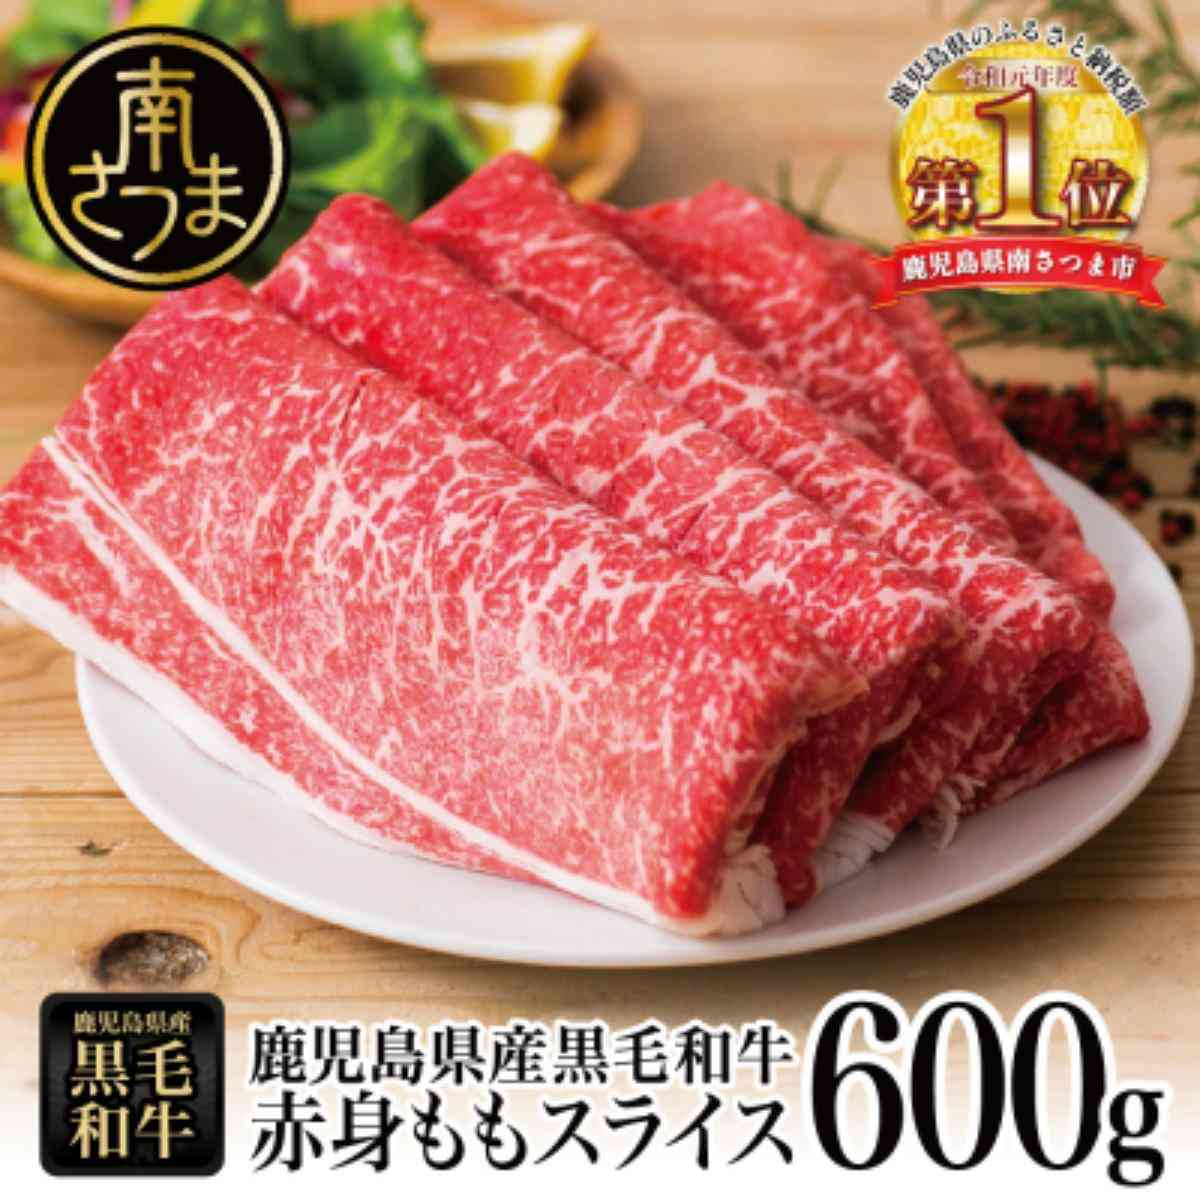 3位 【鹿児島県産】黒毛和牛 赤身 もも スライス 600gすき焼き 冷凍 スターゼン